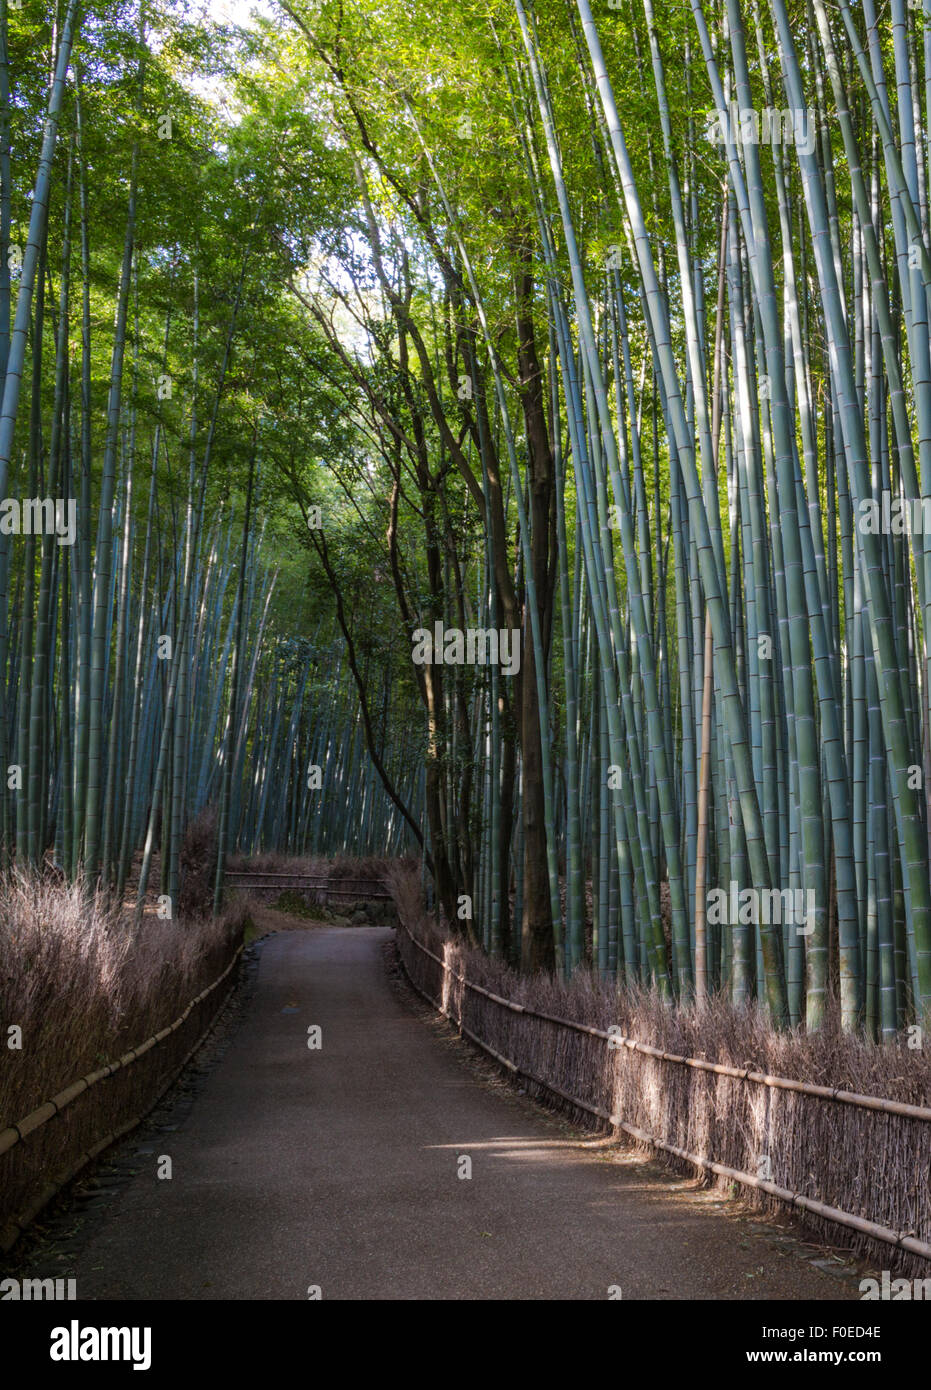 Path in Bamboo Forest in Arashiyama near Kyoto,Japan Stock Photo